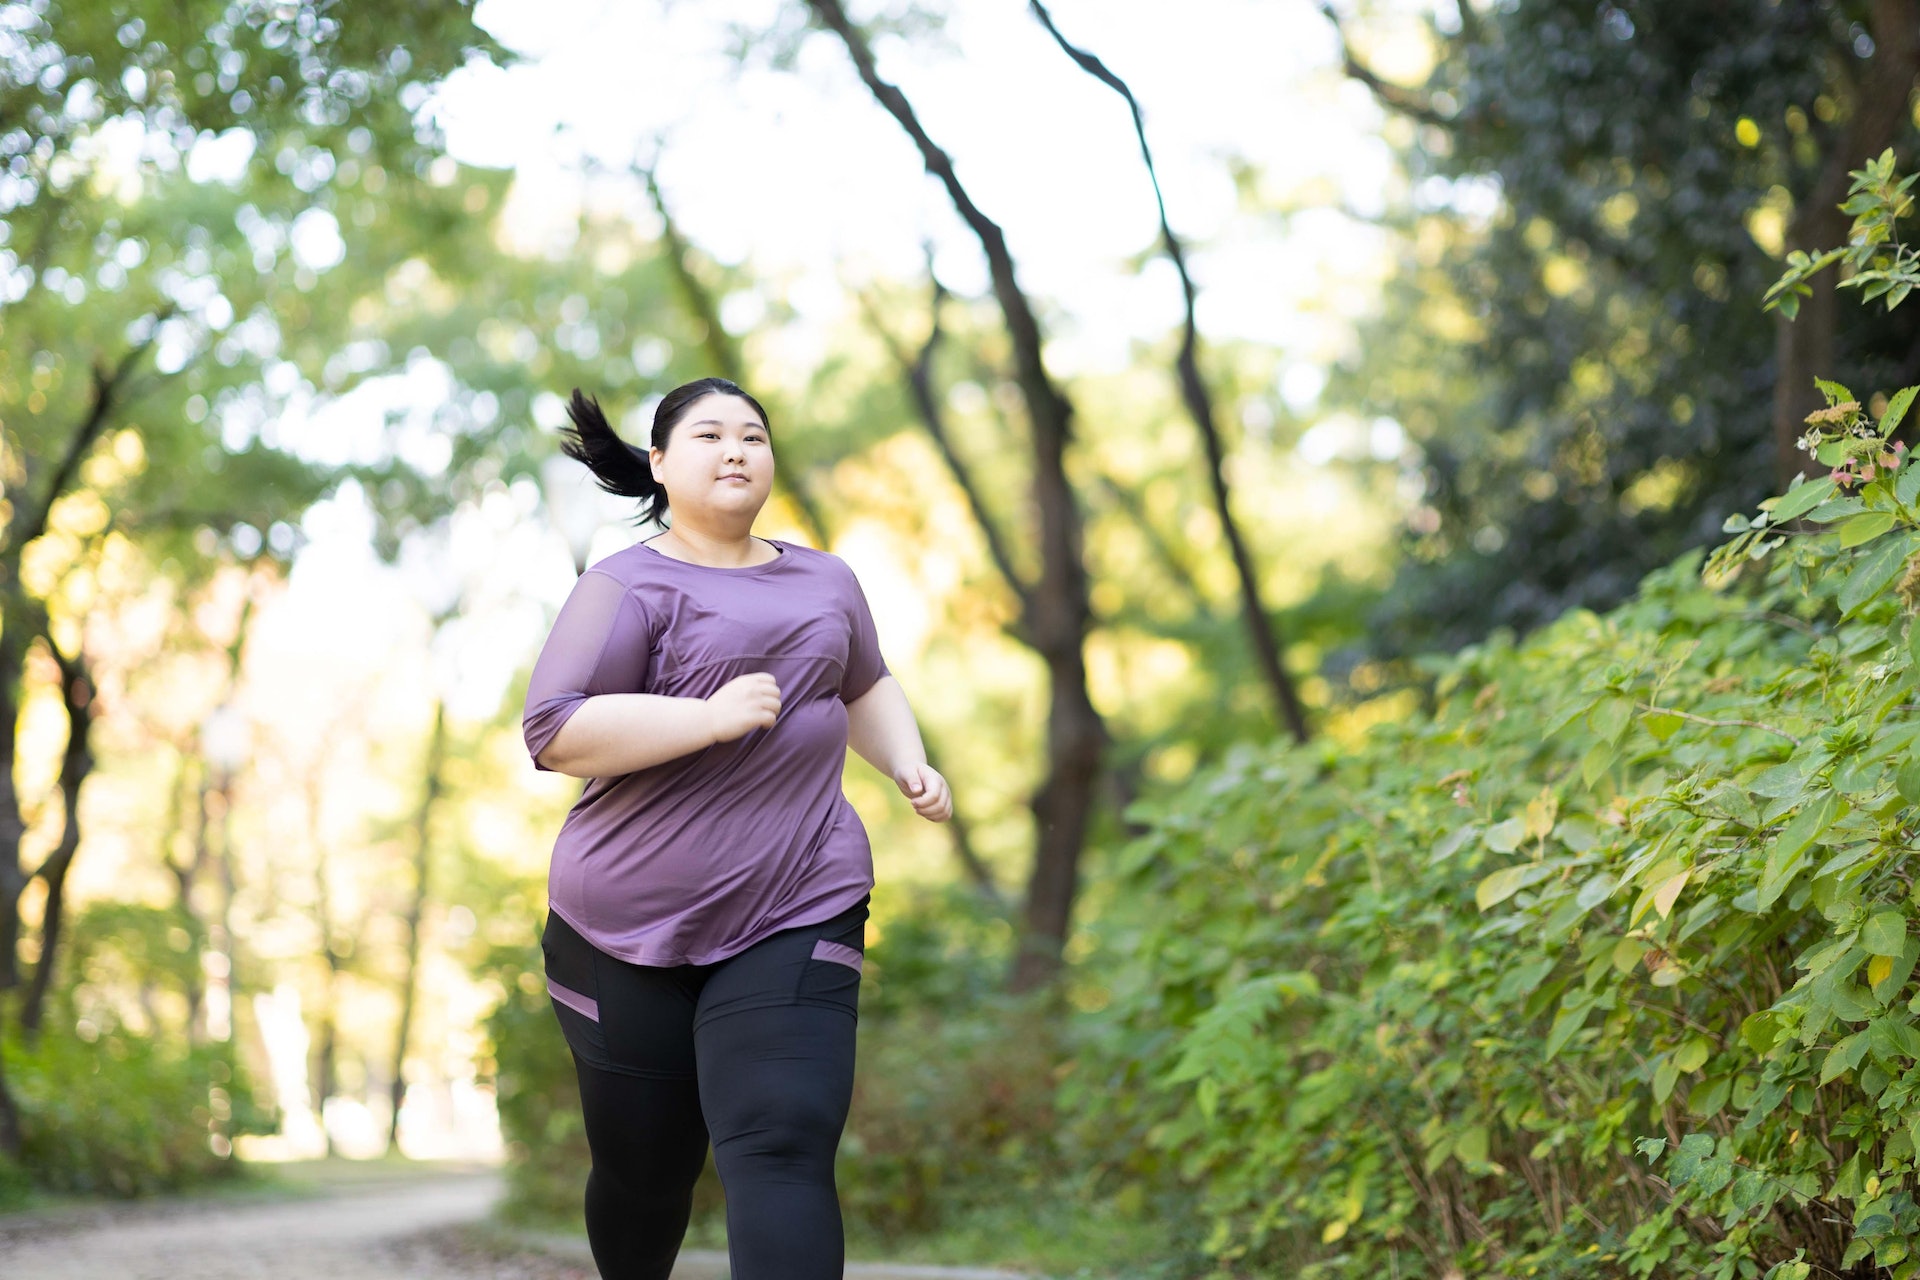 傳統的減肥方法例如注意飲食和恆常運動其實是保持健康身體的基本步，對大多數已患上肥胖症的人要減少過多脂肪的成效不大。